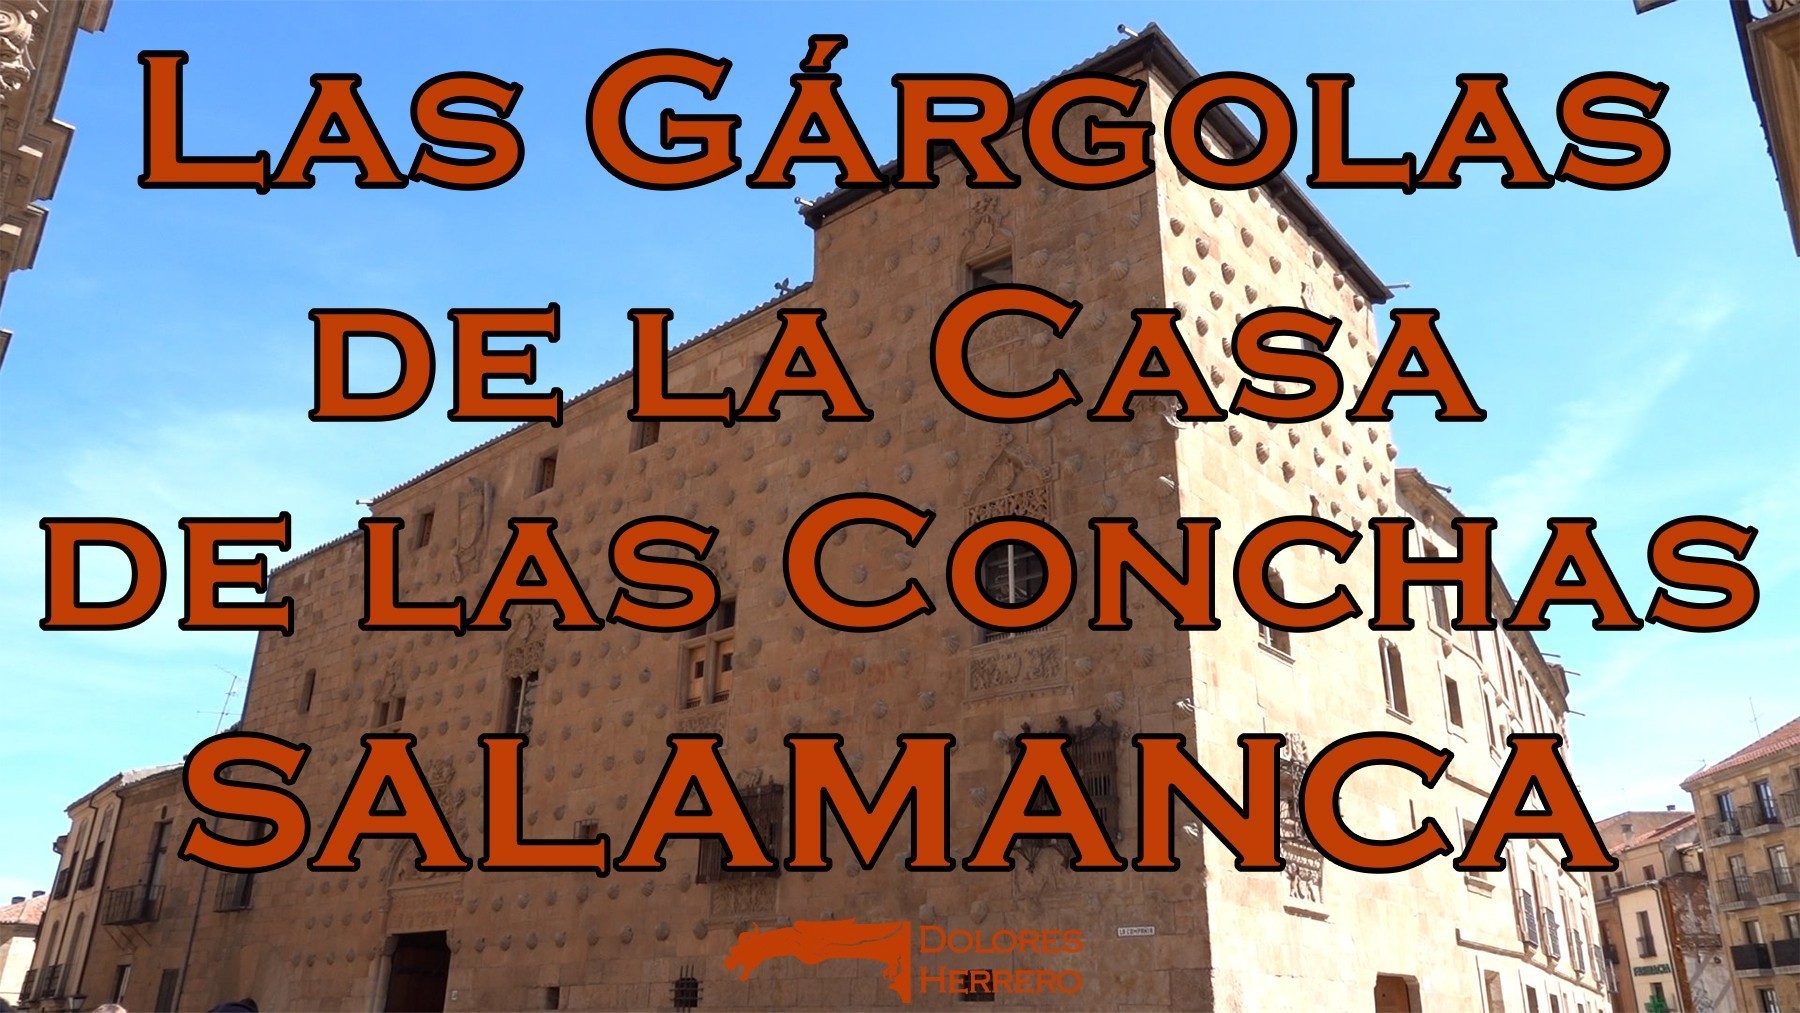 Las gárgolas de la Casa de las Conchas de Salamanca